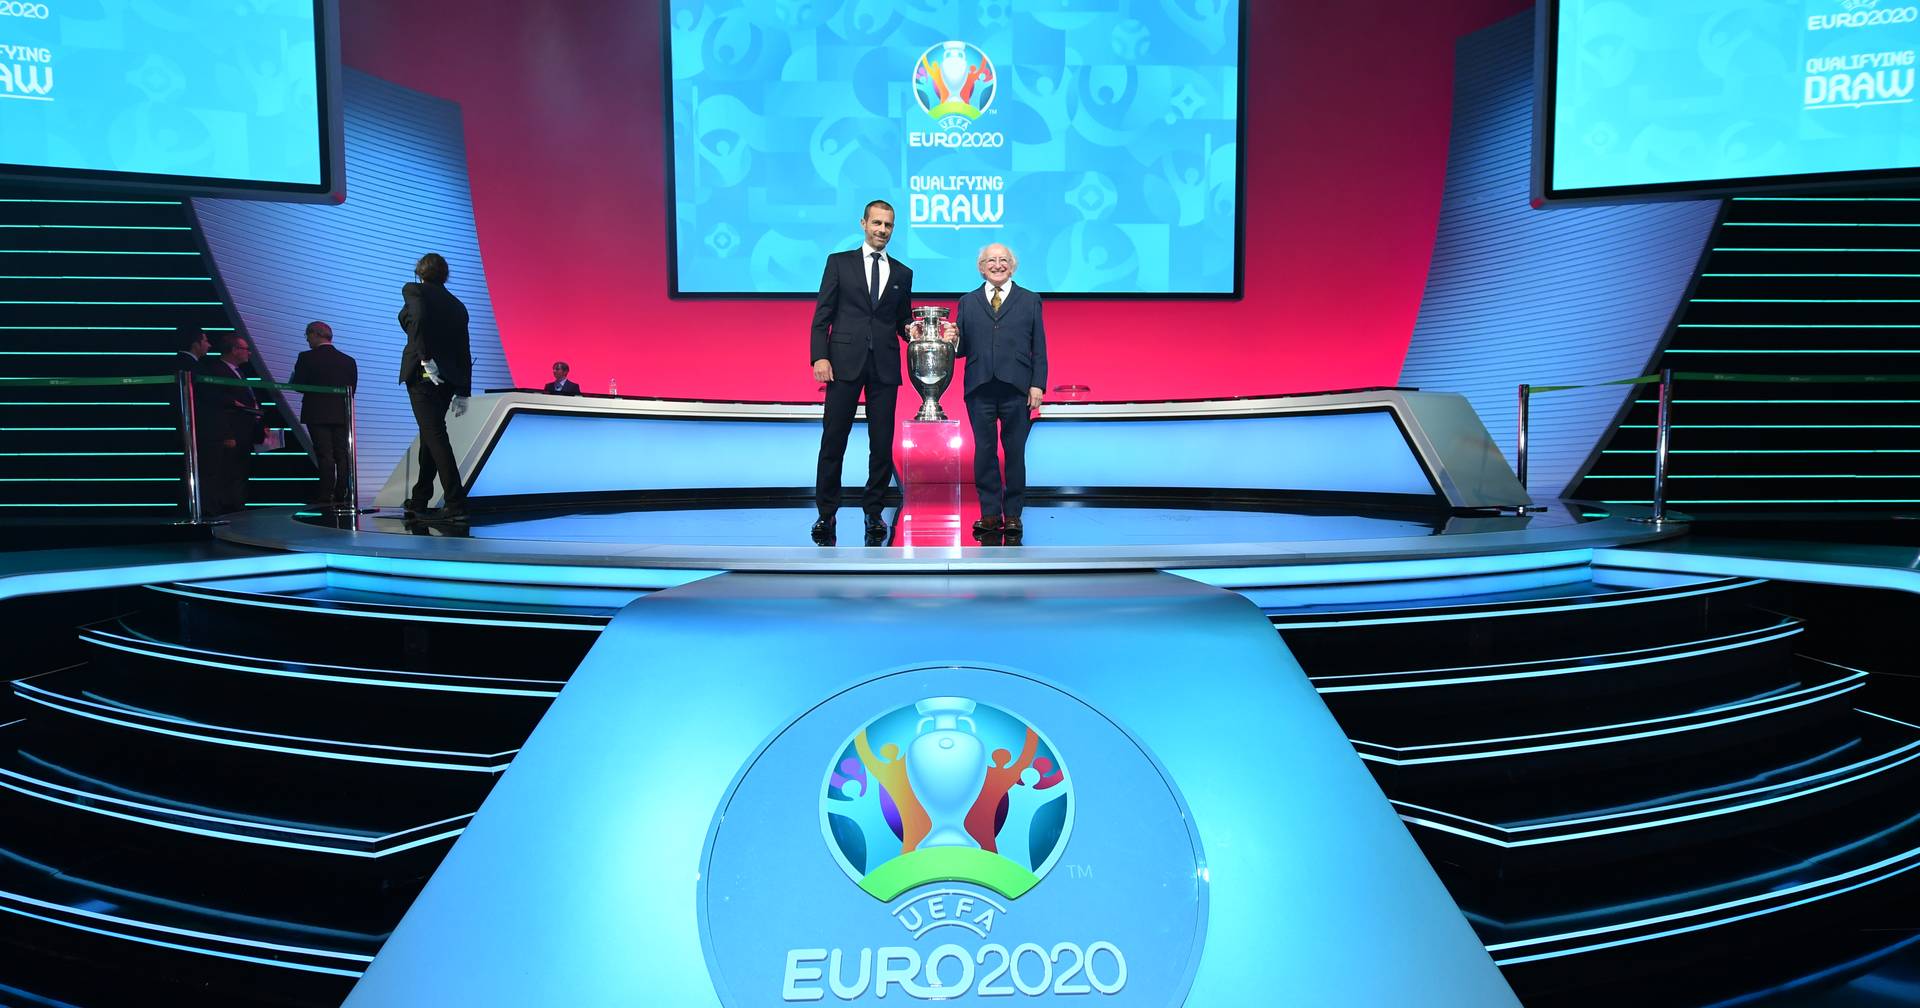 RTP, SIC e TVI partilham direitos de transmissão do Euro'2020